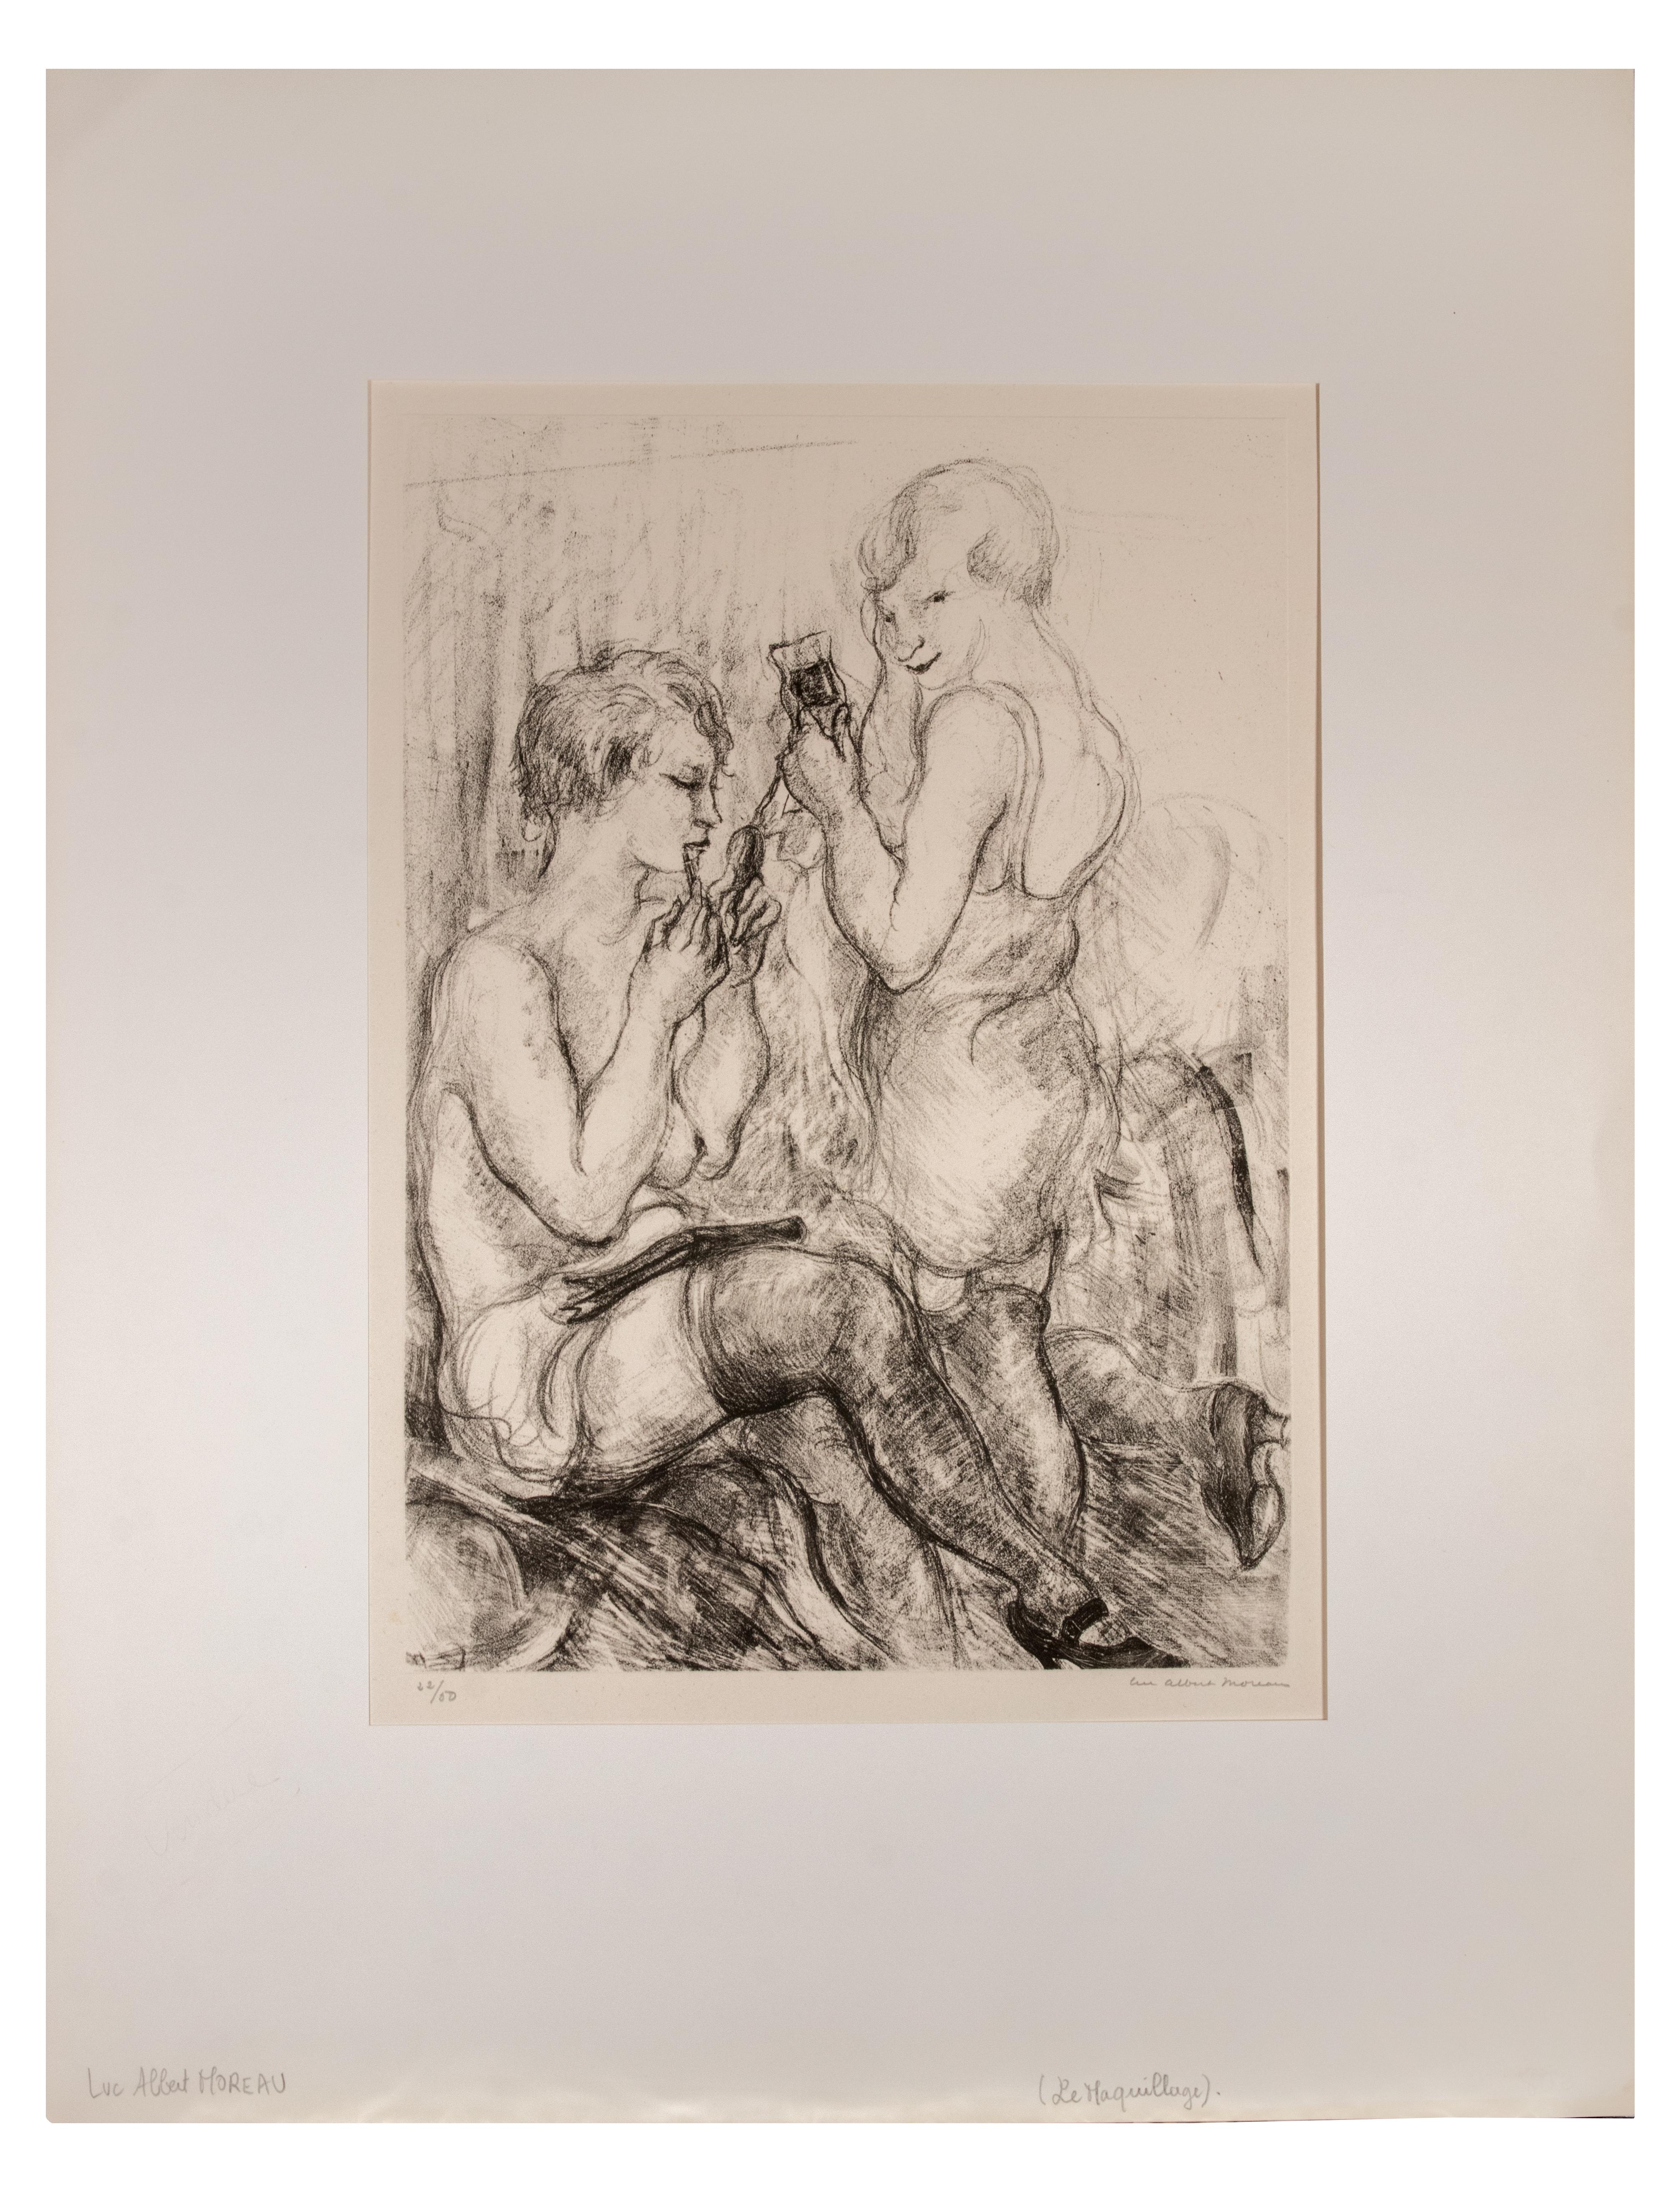 Zwei Frauen ist eine Lithographie auf elfenbeinfarbenem Papier von Luc Albert Moreau.

Das Kunstwerk ist in gutem Zustand, inklusive eines weißen Passepartouts aus Karton (64,5x50 cm).

Handsigniert in der rechten unteren Ecke, nummeriert auf der